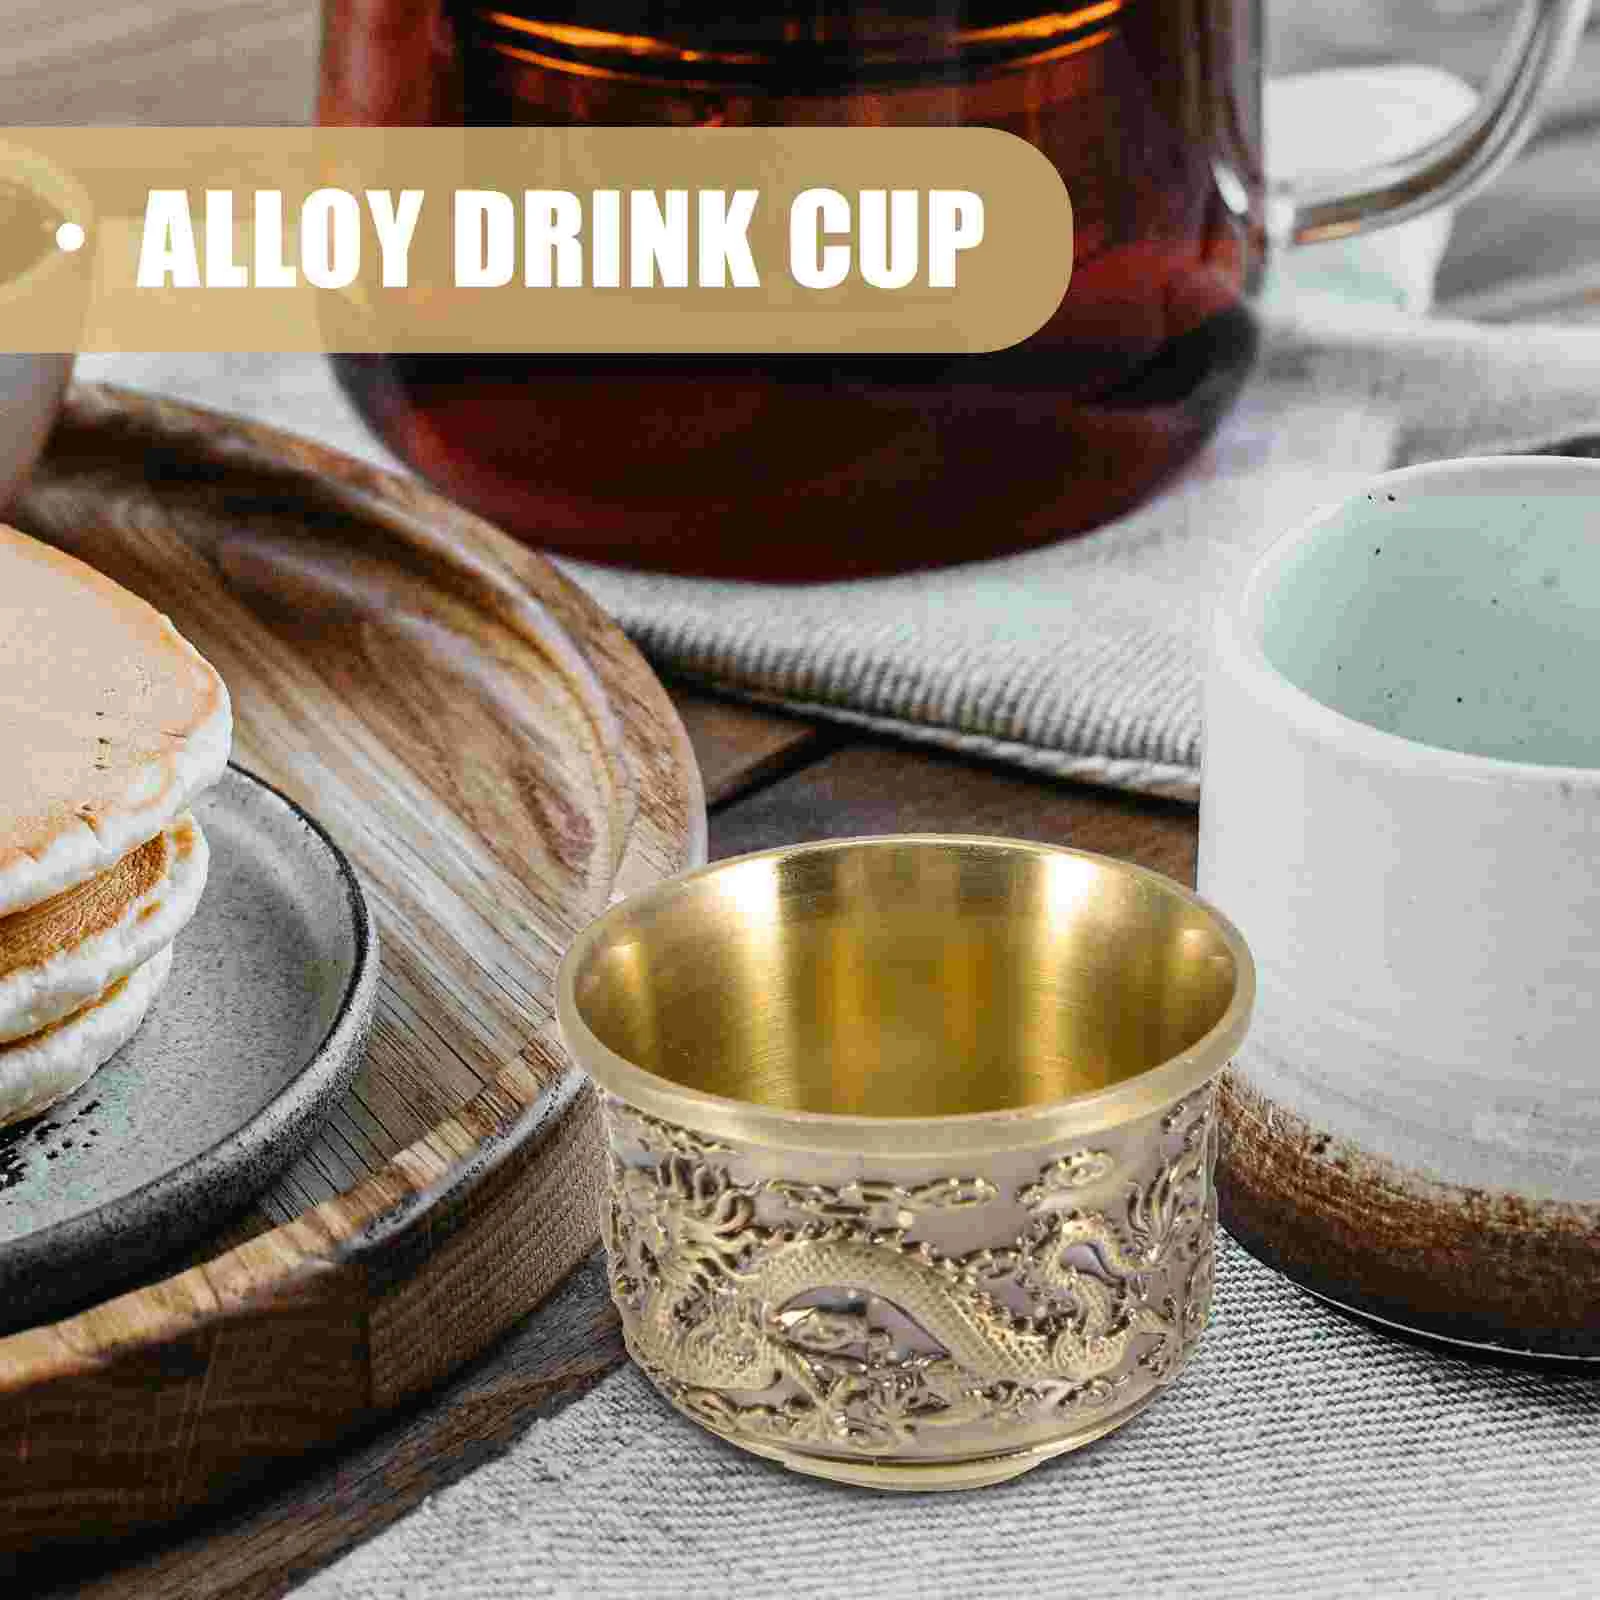 Dragon Phoenix Cup Tea Teacup Convenient Vintage Set Alloy Drink Teaware Zinc Chinese Style Retro Office Cups images - 6